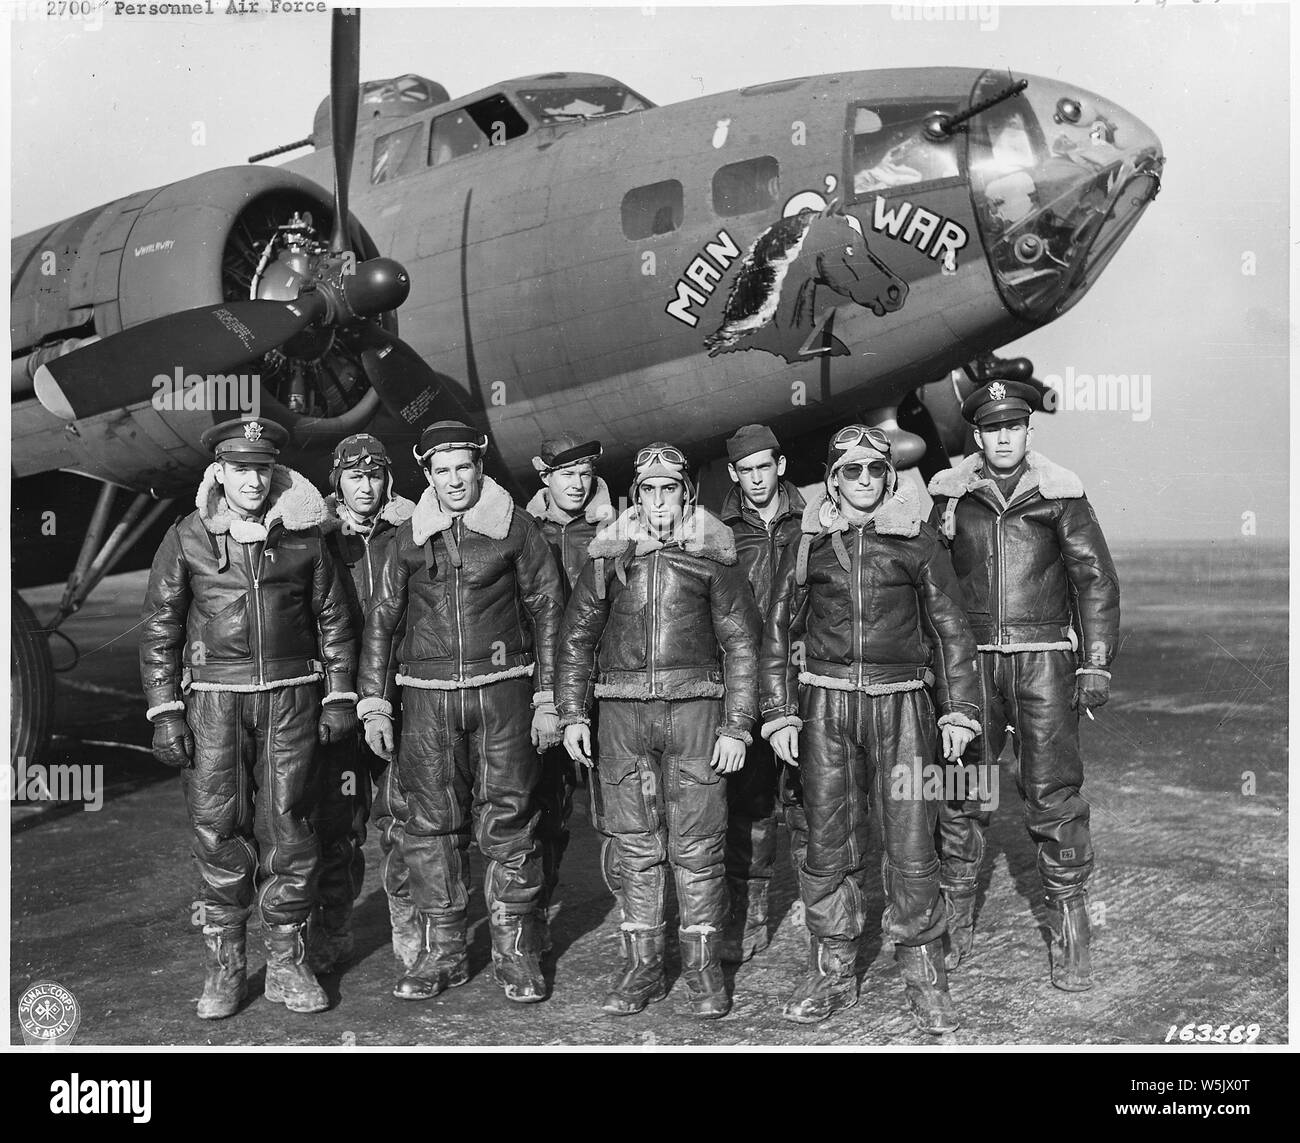 Il personale dell'Air Force & attrezzature. Il pacifico, Inghilterra, nello Stato di Washington DC. 1942-44 (perlopiù 1943); l'ambito e il contenuto: U.S. Bombardiere equipaggio situata in Inghilterra. Lt. J.M. Stewart, Marrowbone, Ky., Lt. W.W. Dickey, Beverly, Massachusetts, S/Sgt. R.C. Schnoyer, East Greenville, Pa., S/Sgt. H.L. Langan, Los Angeles, California, T.E. McMillan, Boonville, Oh., T/Sgt. C.J. Merriwether, Sanford Fla., T/Sgt. Jack M. WHEELER, Des Moines, Ia., Lt. J.A. Creamer, Louisville, KY. 367 Bomber Squad. Thurleigh, Inghilterra. Note generali: l'equipaggio del Boeing B-17F-5-BO Fortezza (s/n 41-24399) uomo-O-guerra dal 323squadrone di bomba, 91s Foto Stock